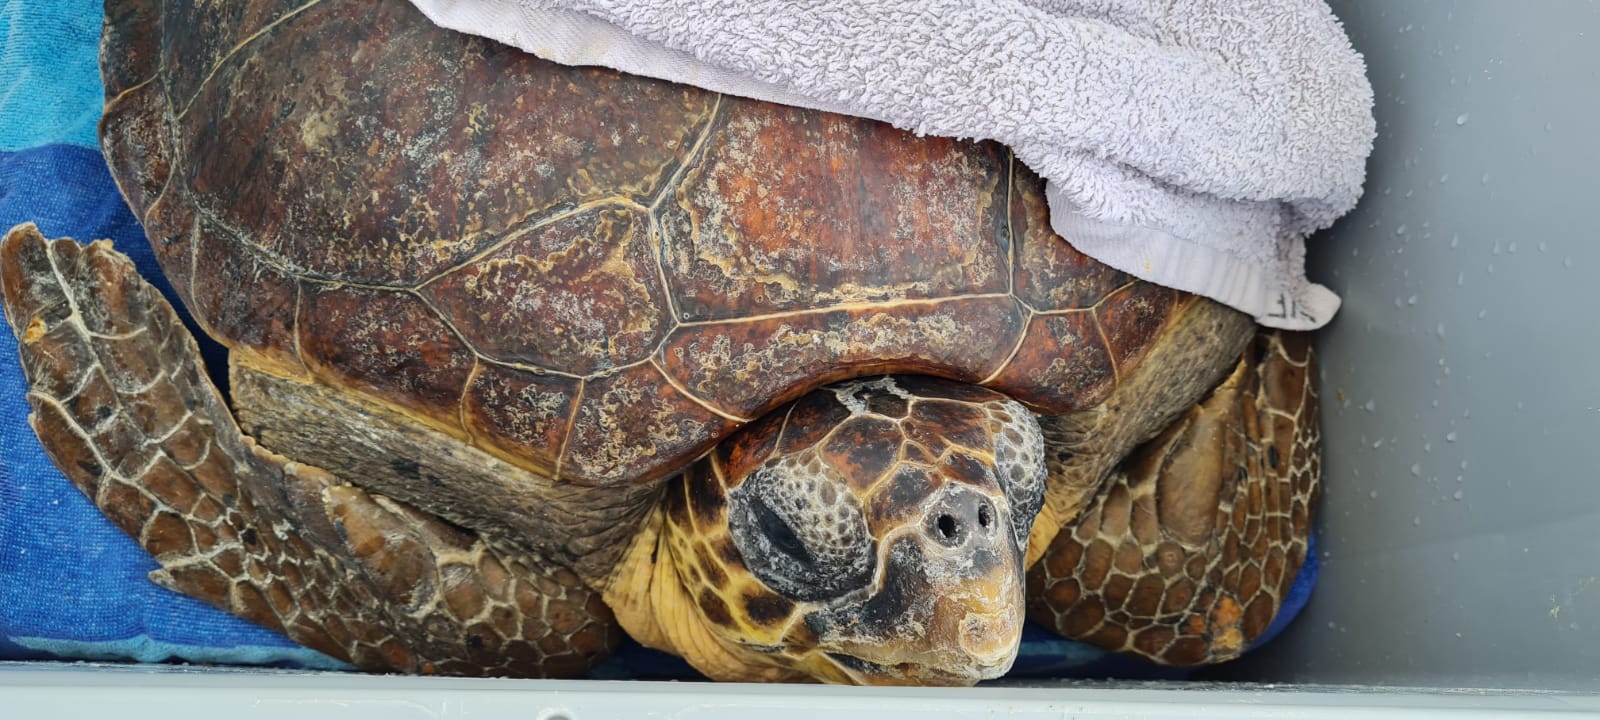 El 75% de les tortugues que s'han rescatat enguany estaven emmallades amb plàstics